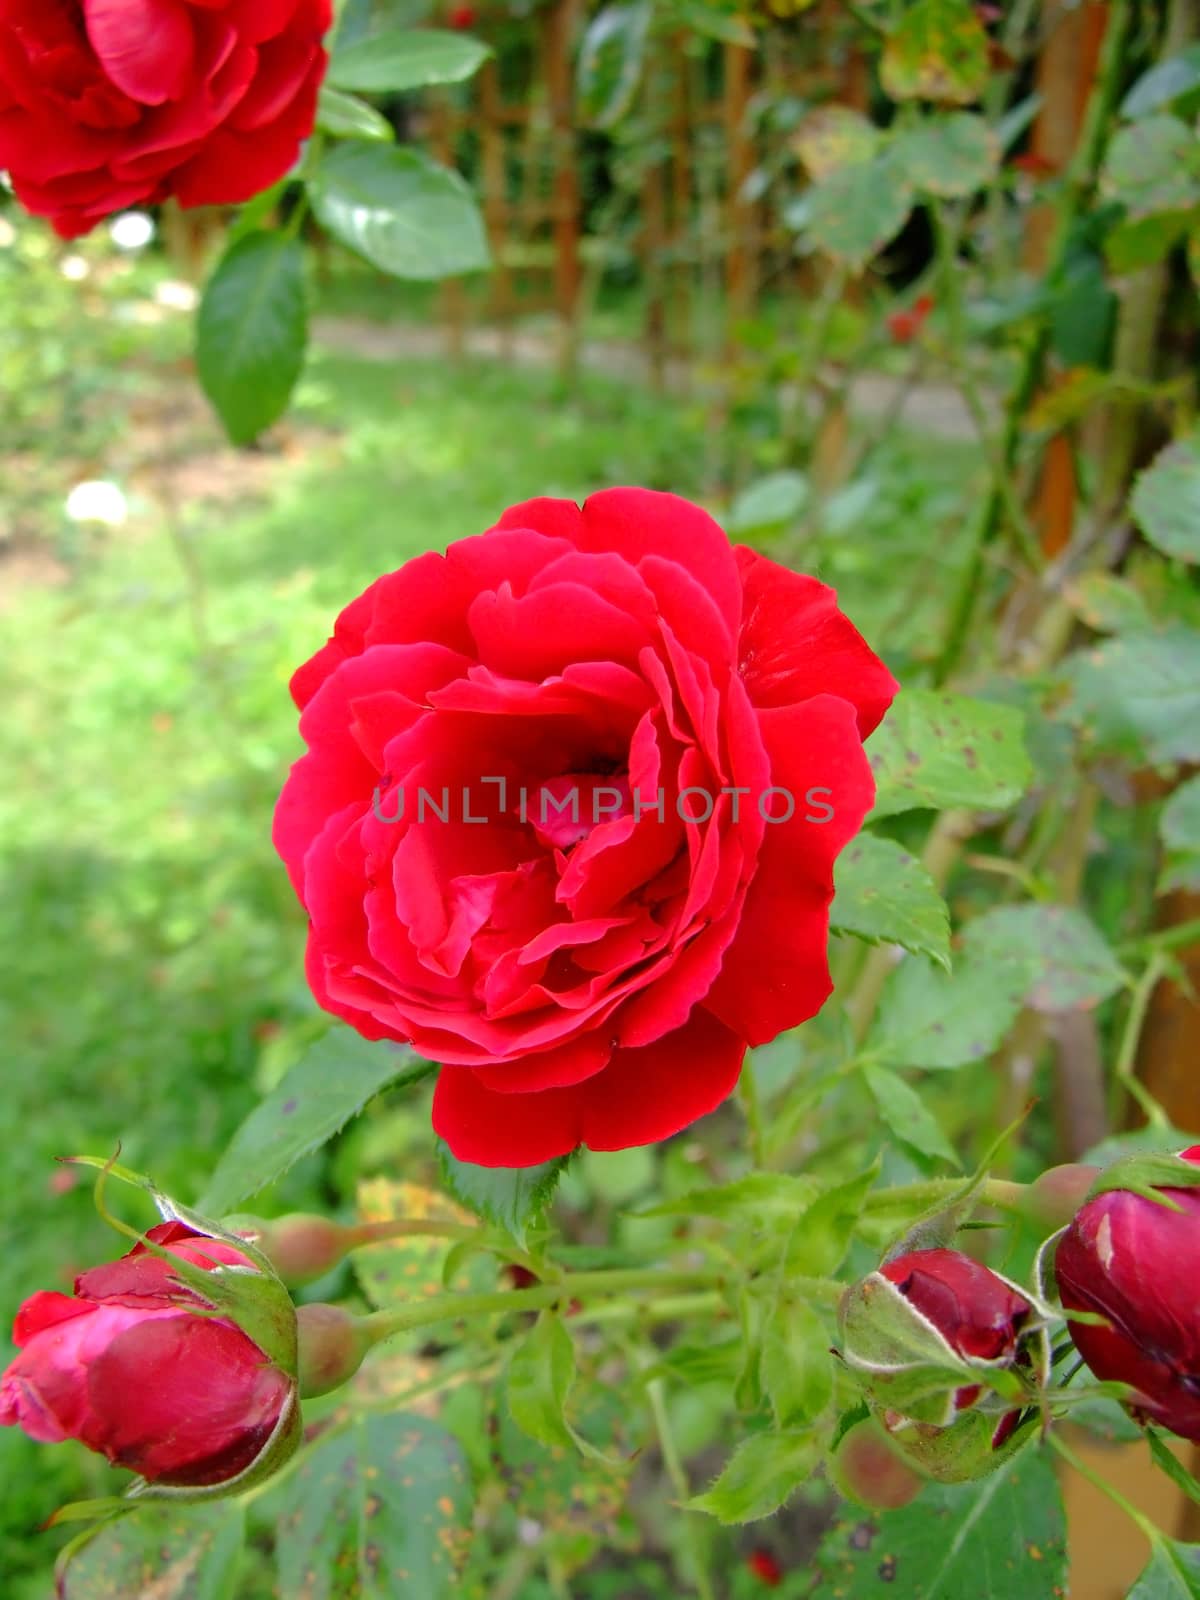 Symphatie Roses , Rosaceae Family, Rosa Genre, Iasi, Romania